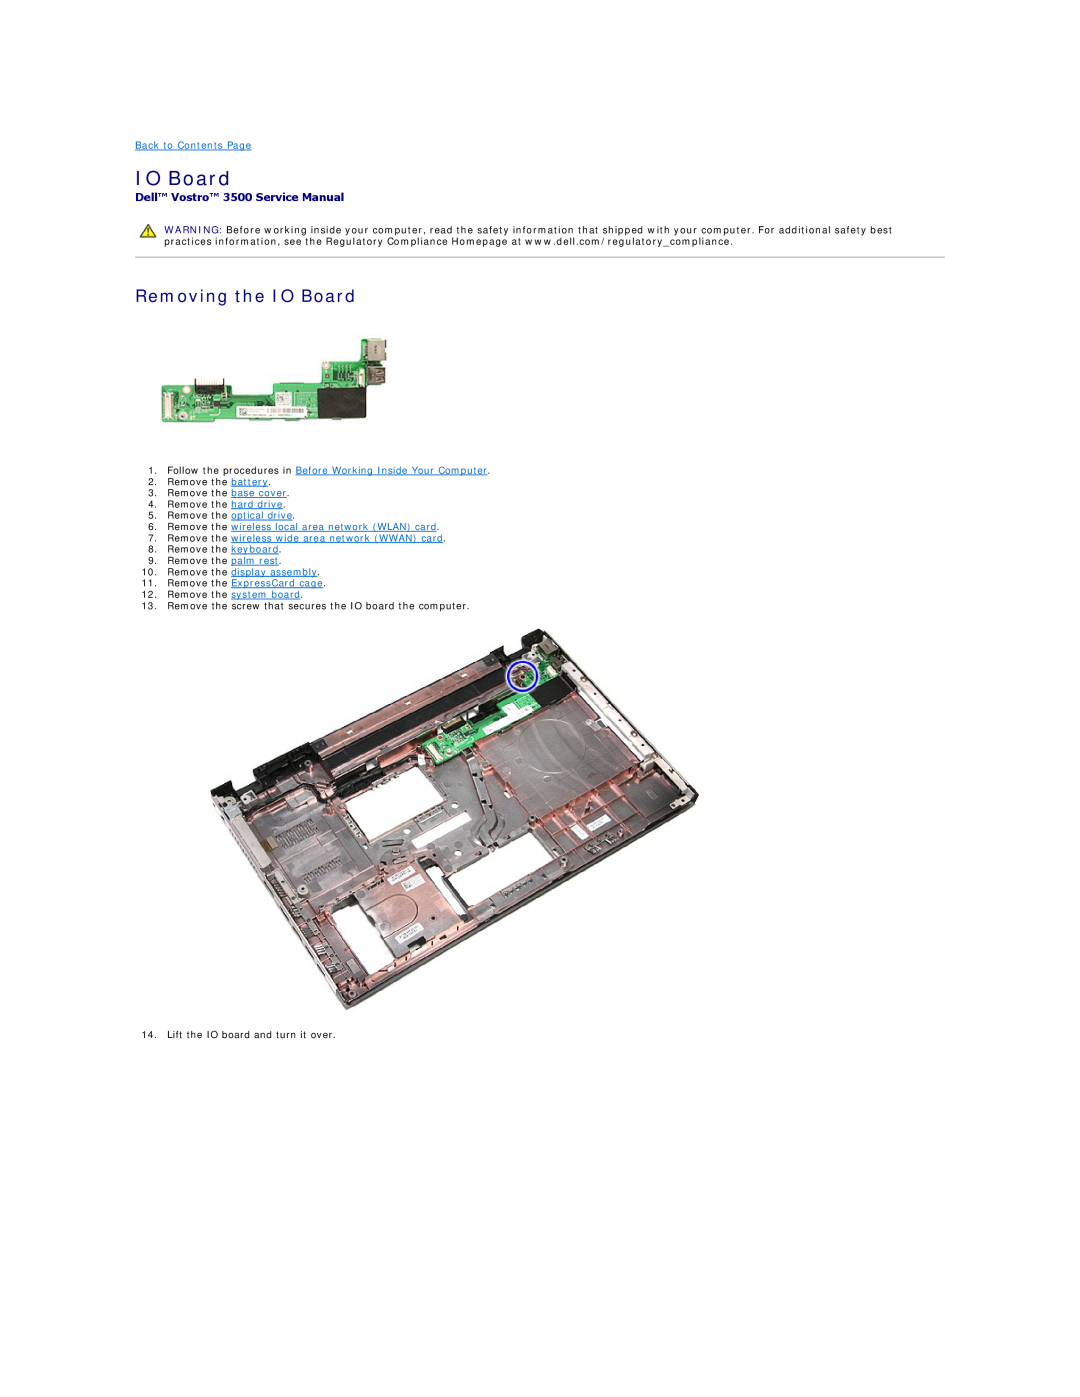 Dell specifications Removing the IO Board, Dell Vostro 3500 Service Manual 